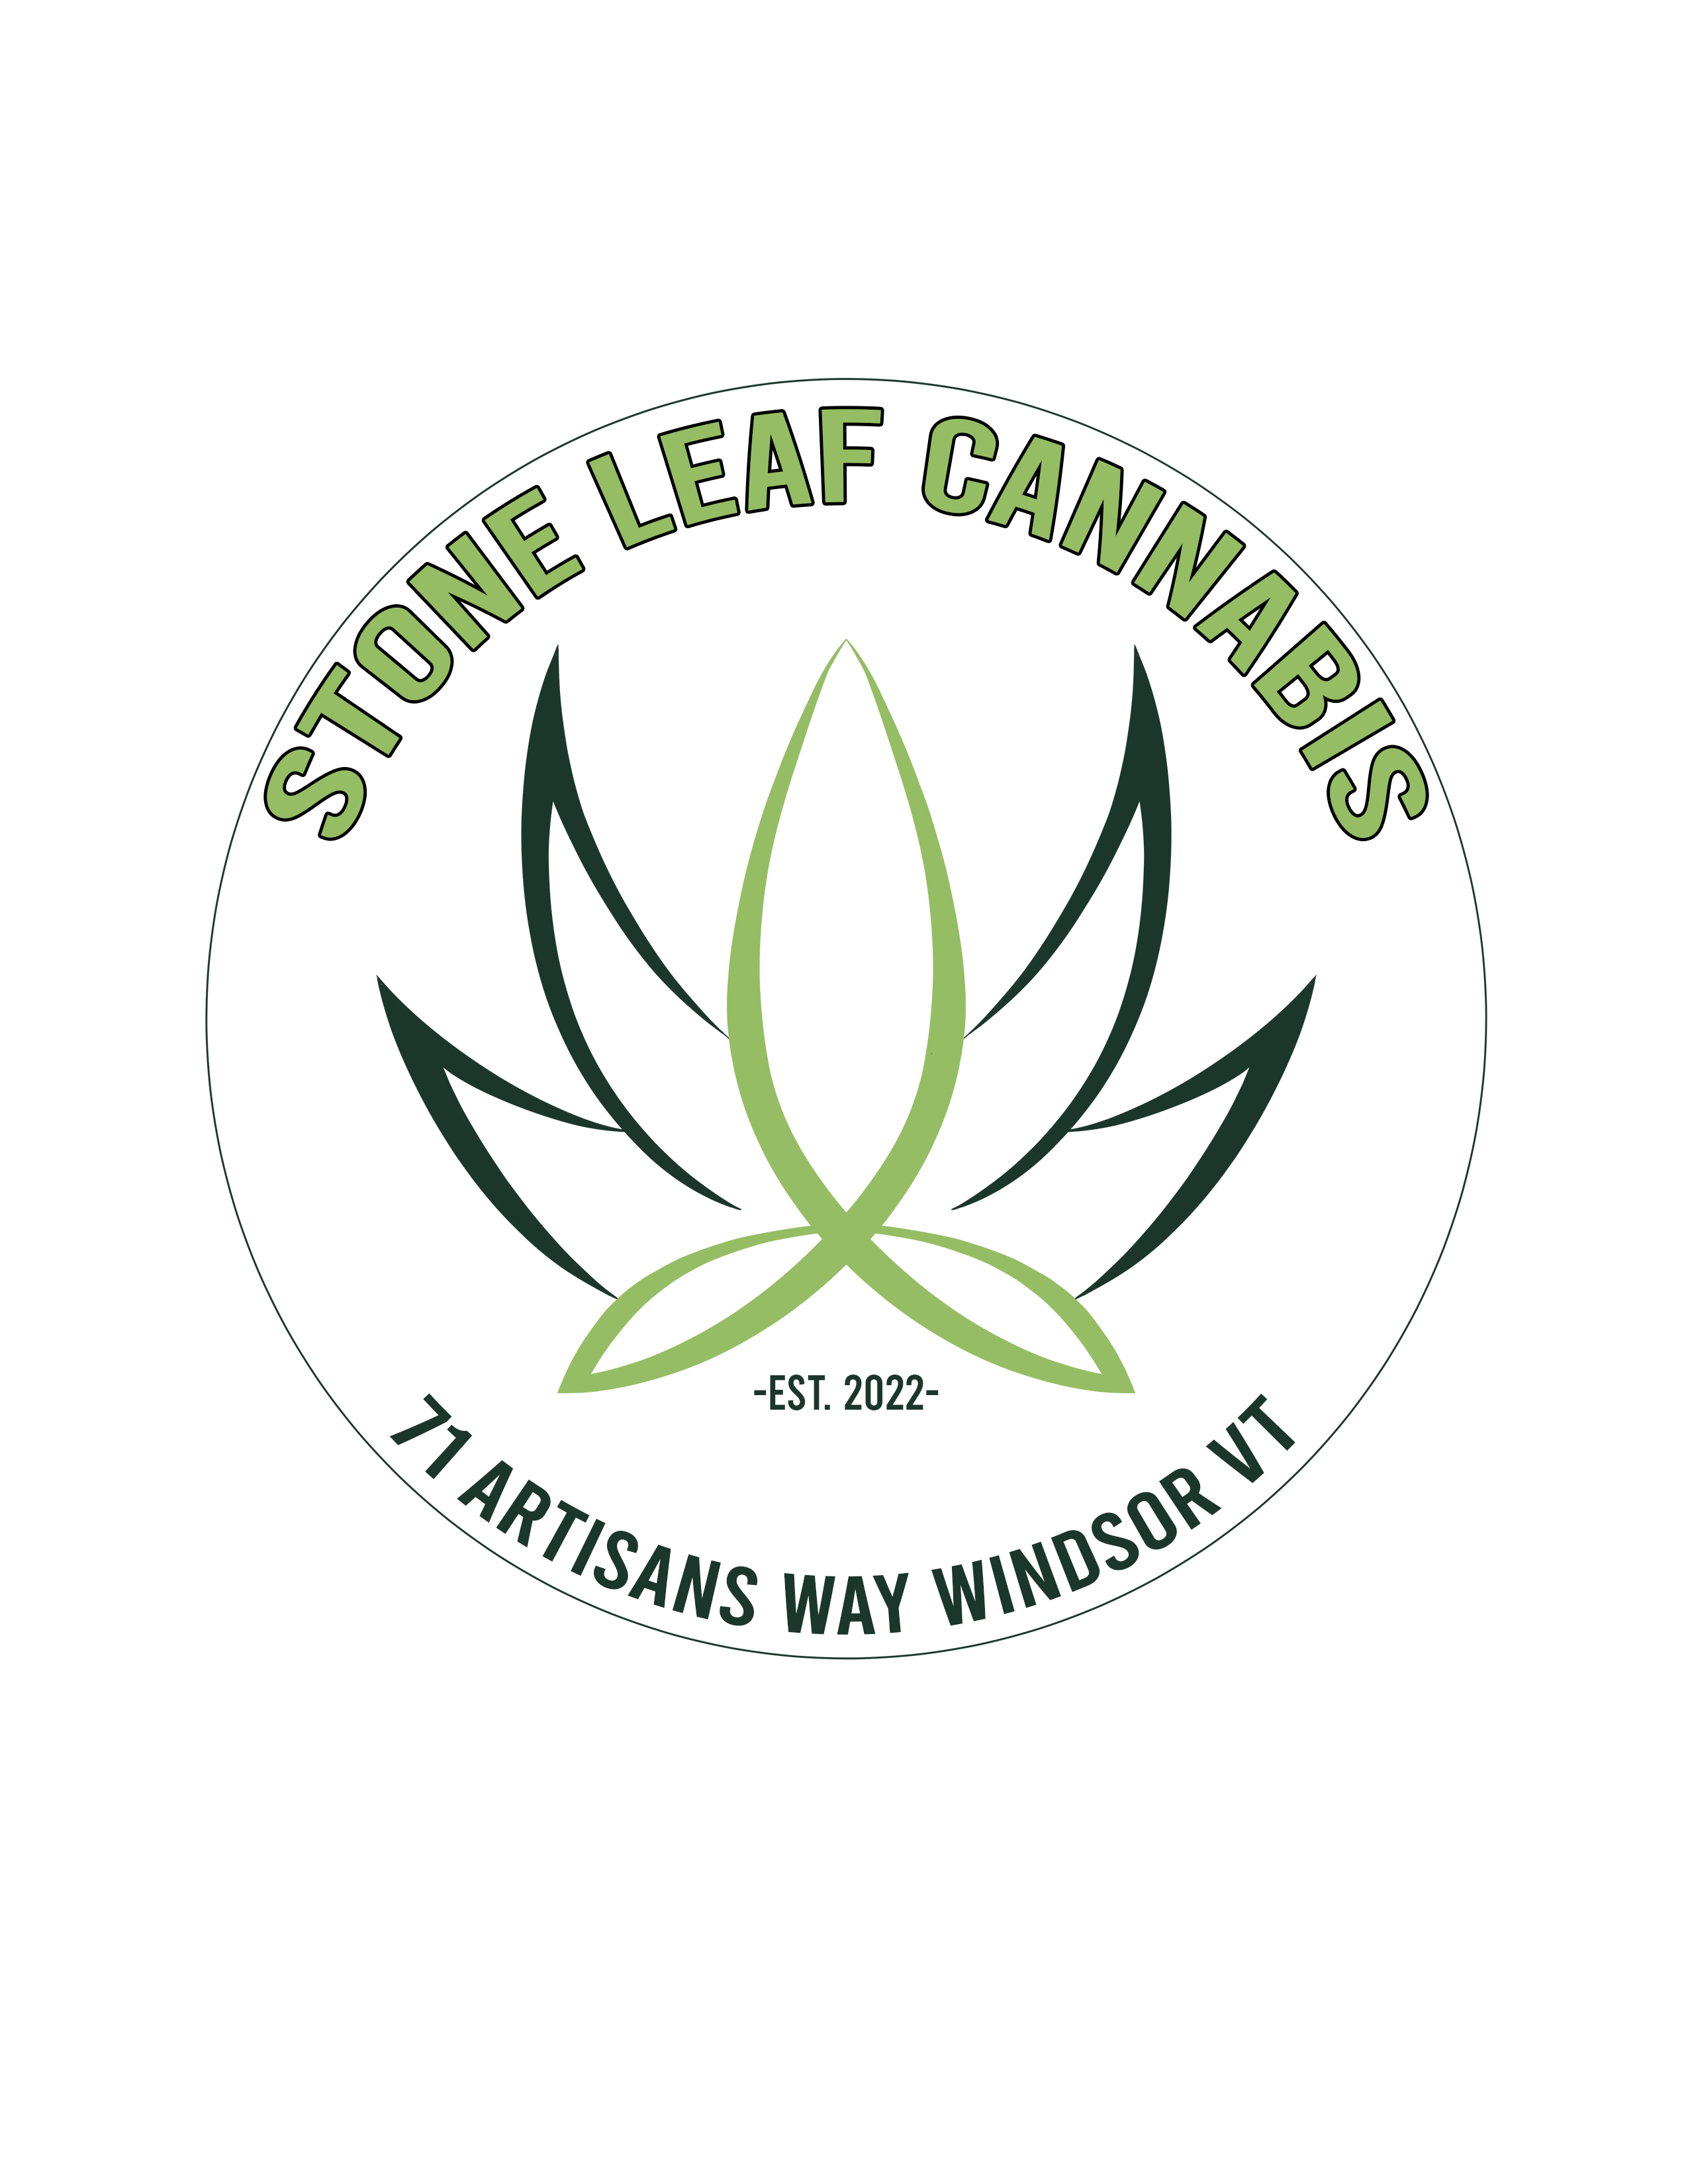 Stone Leaf Cannabis logo